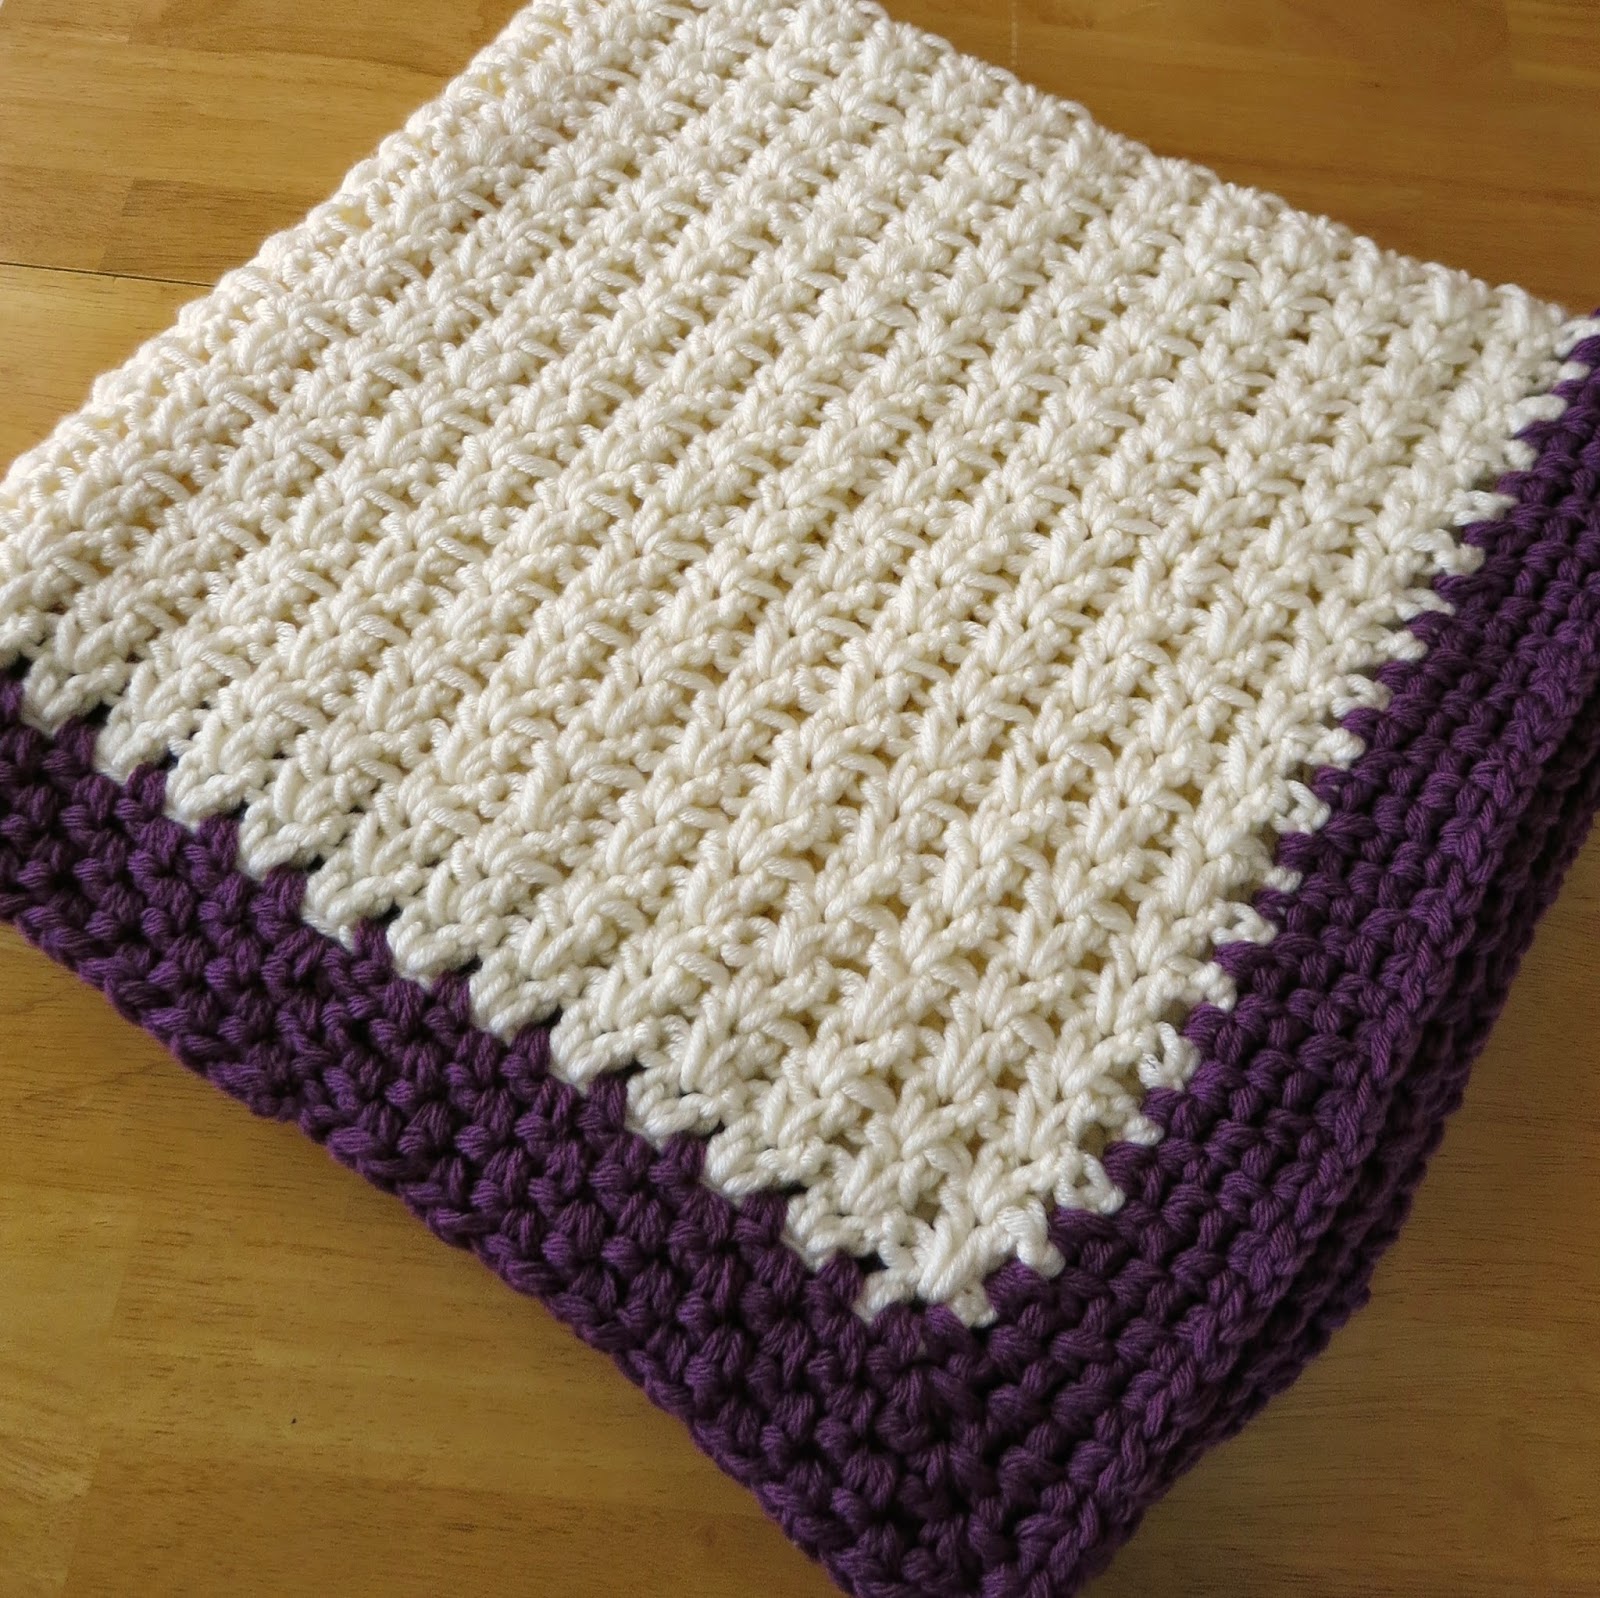 Da's Crochet Connection: Double Crochet V Baby Blanket